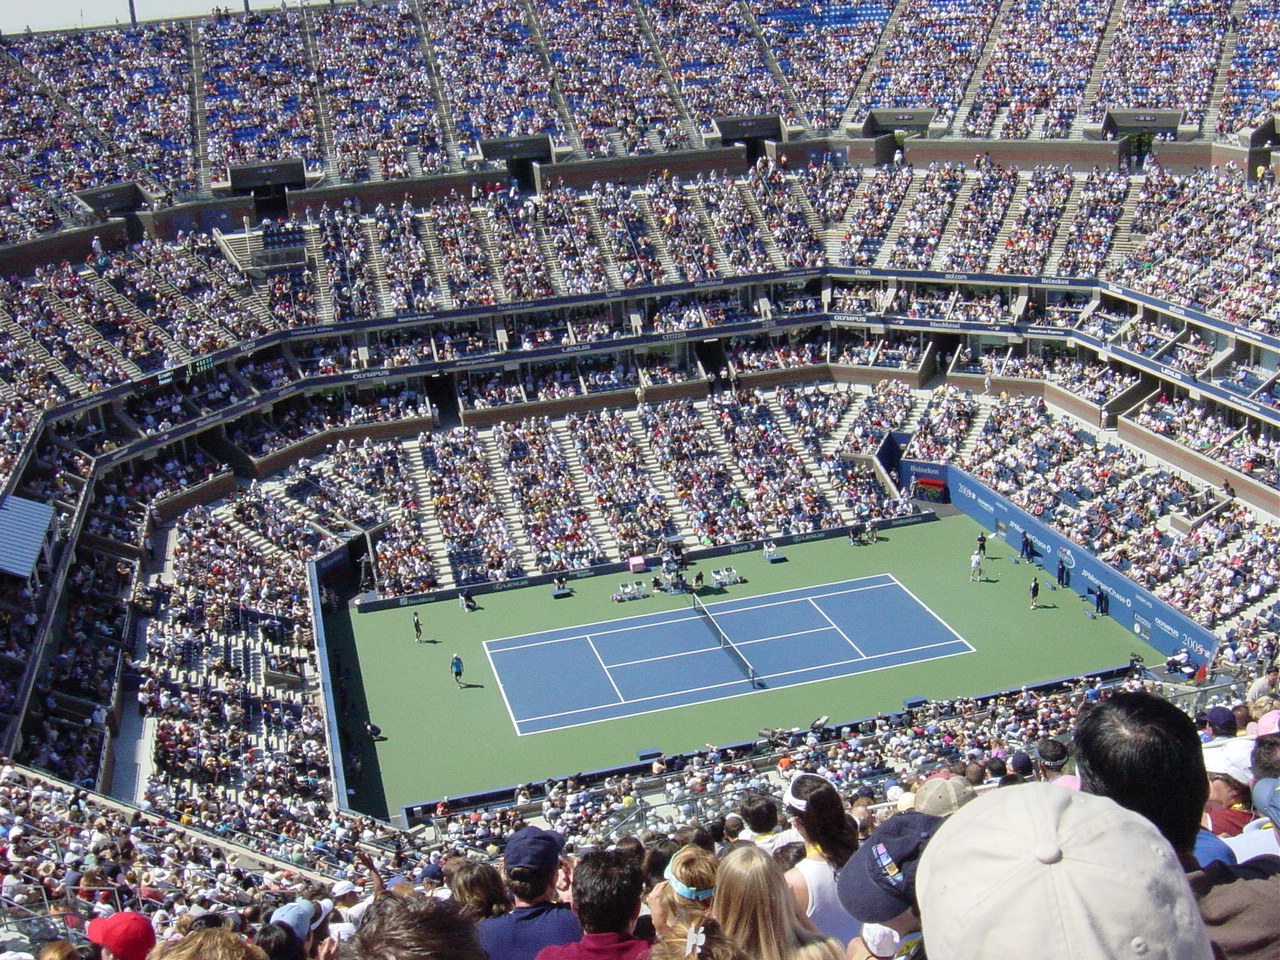 02 Arena Seating Plan Tennis